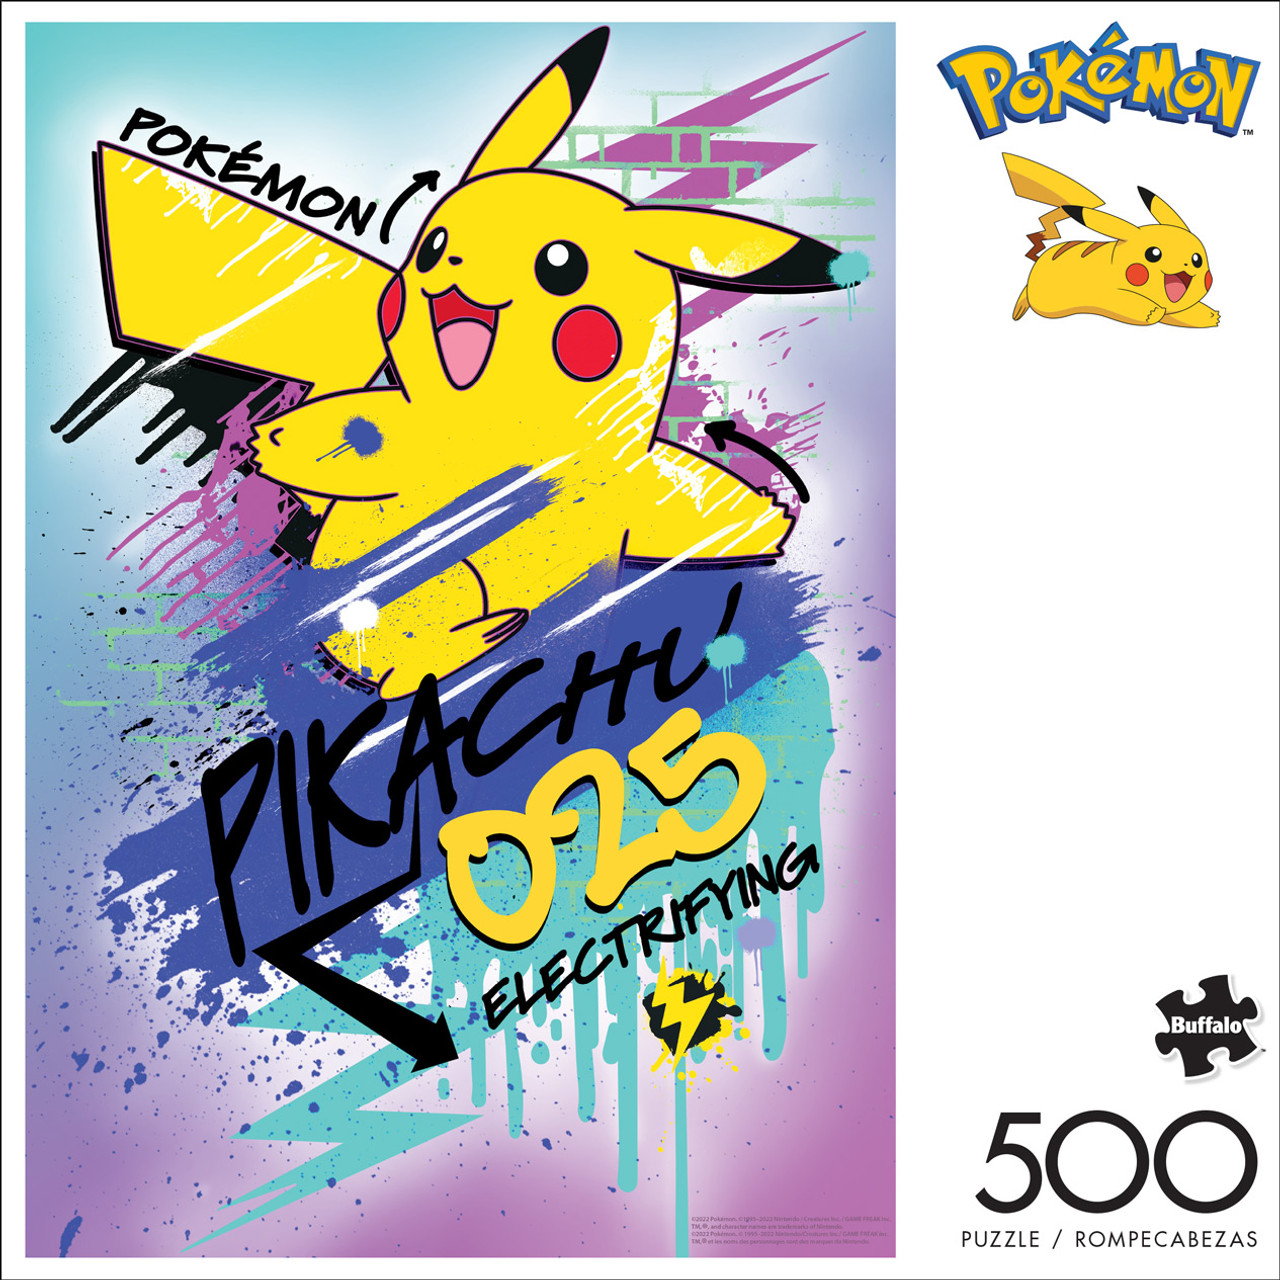 Puzzle 500 pieces Pokemon complet - Ravensburger - Ravensburger